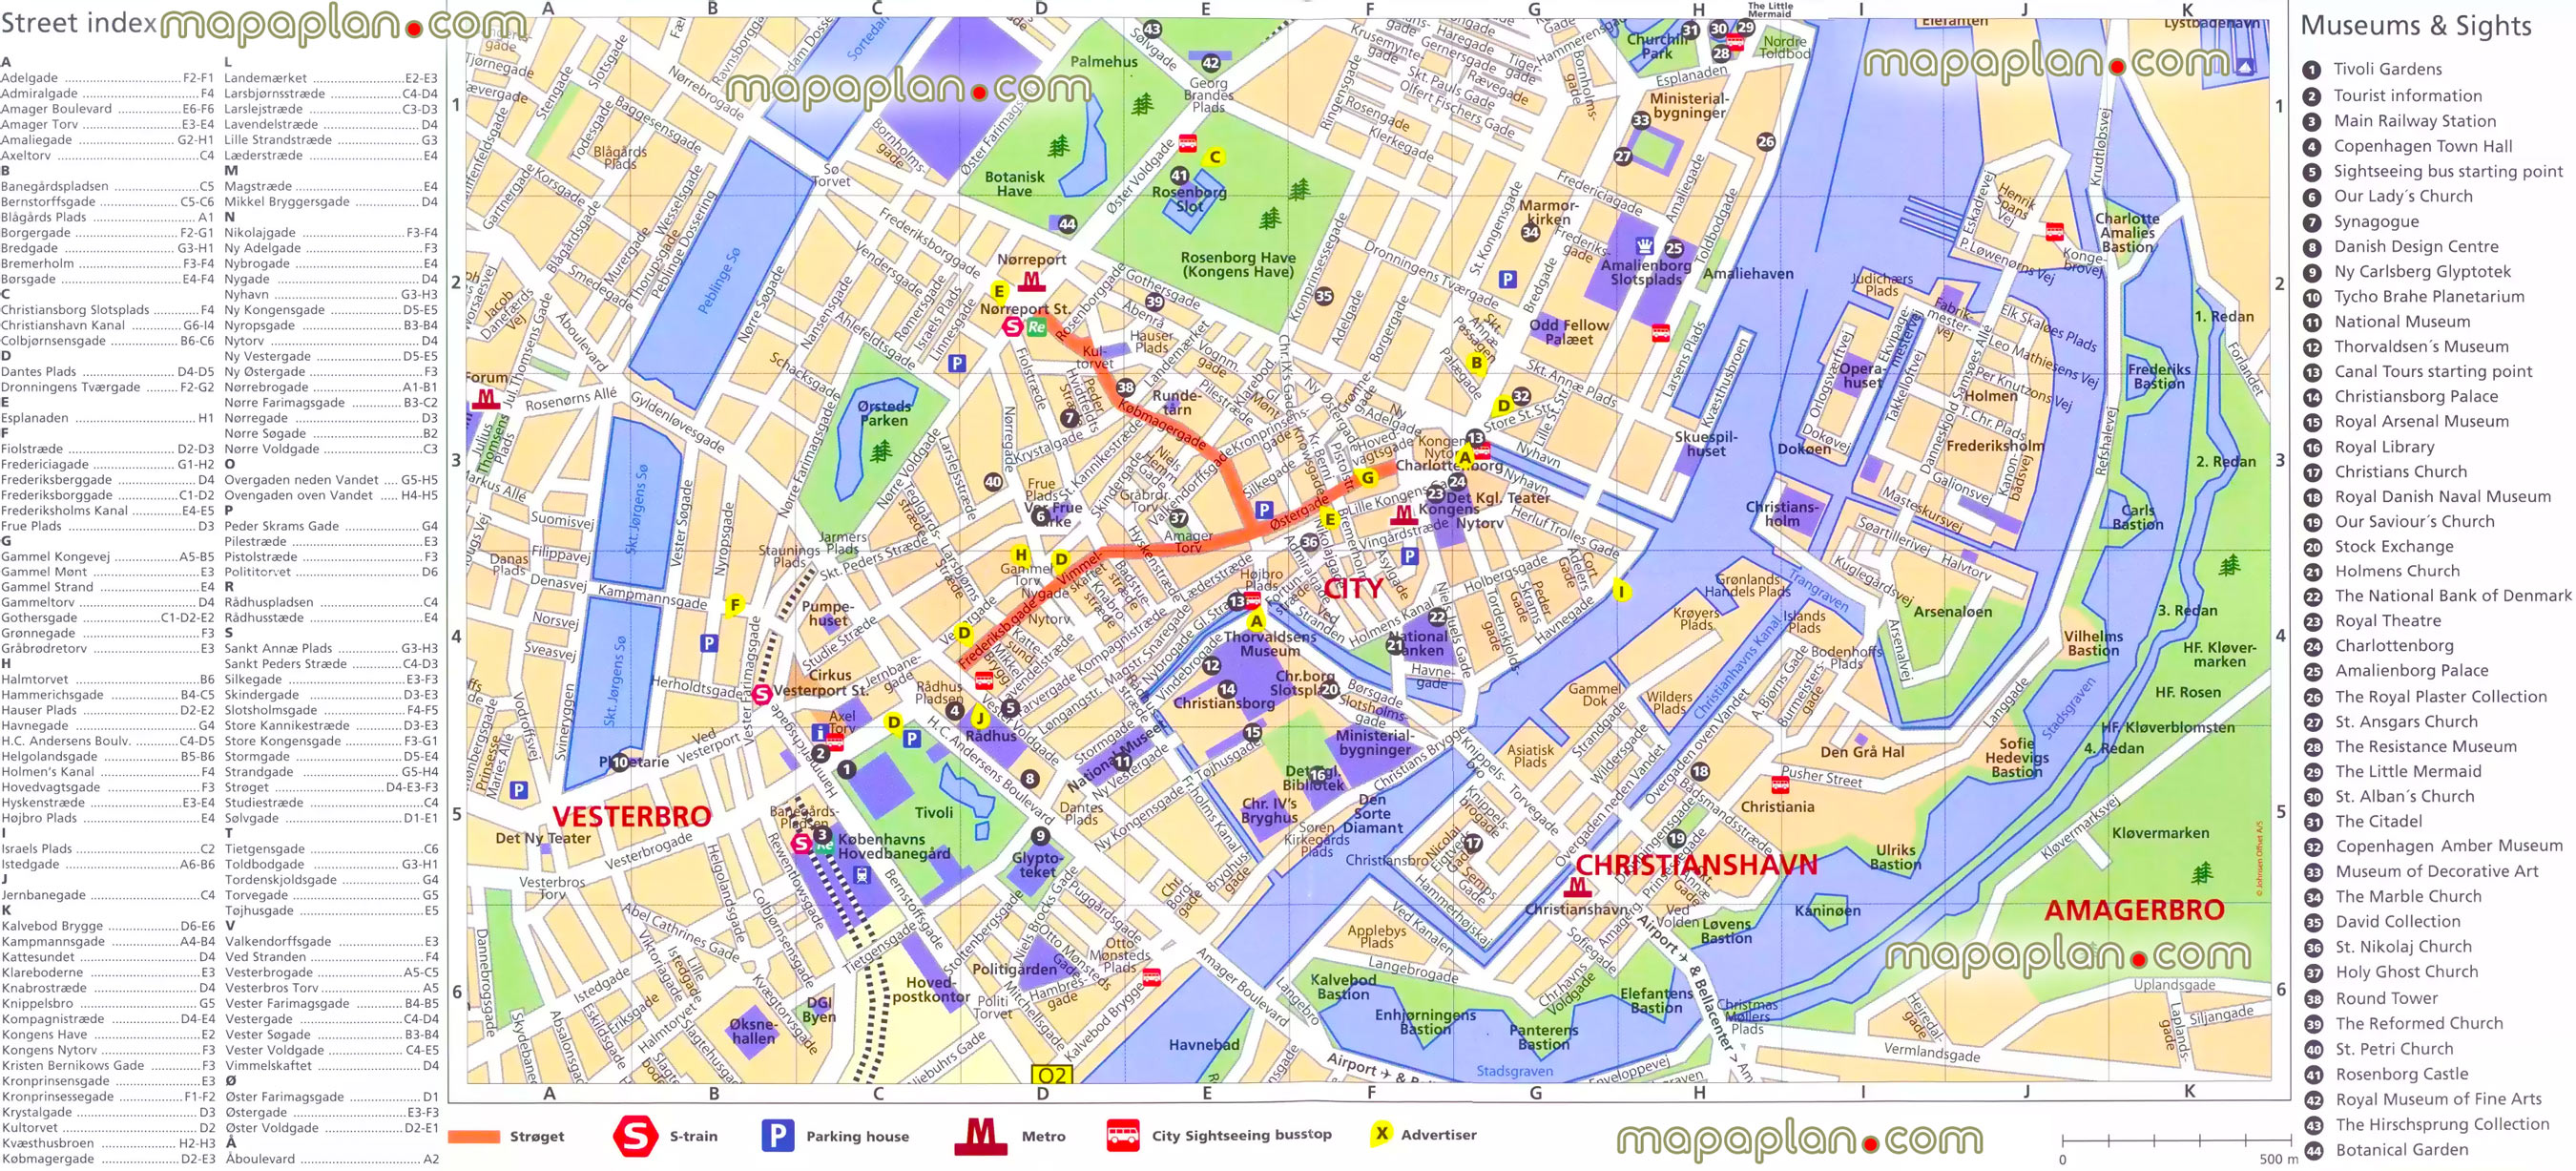 Piani delle mappe di Copenaghen